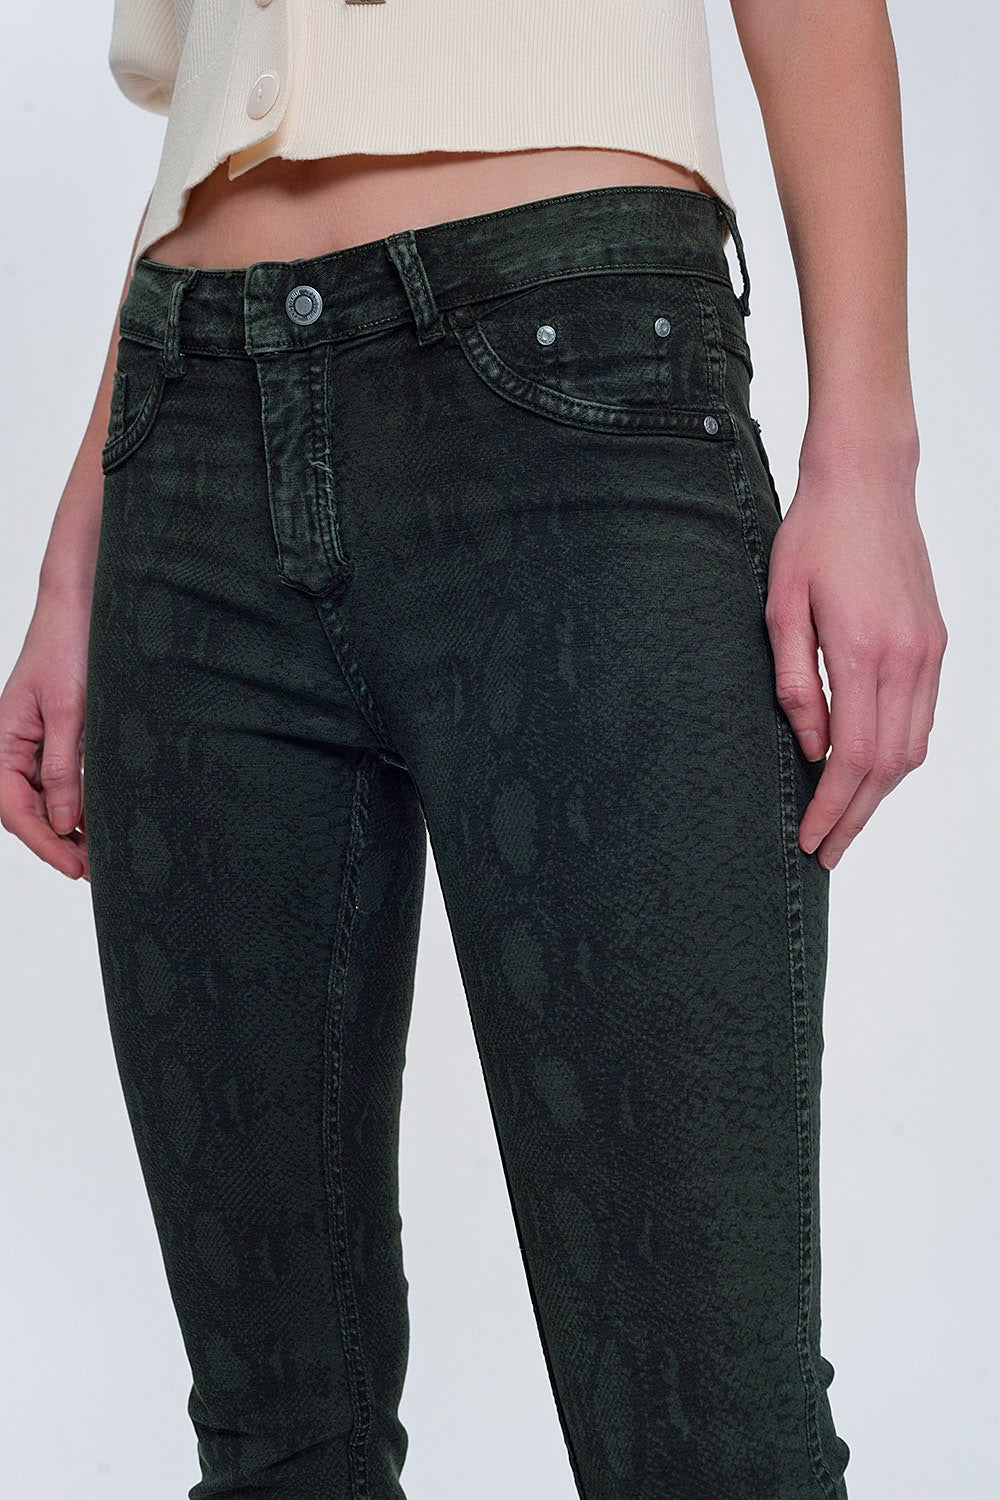 Khaki super skinny reversible pants with snake print Szua Store